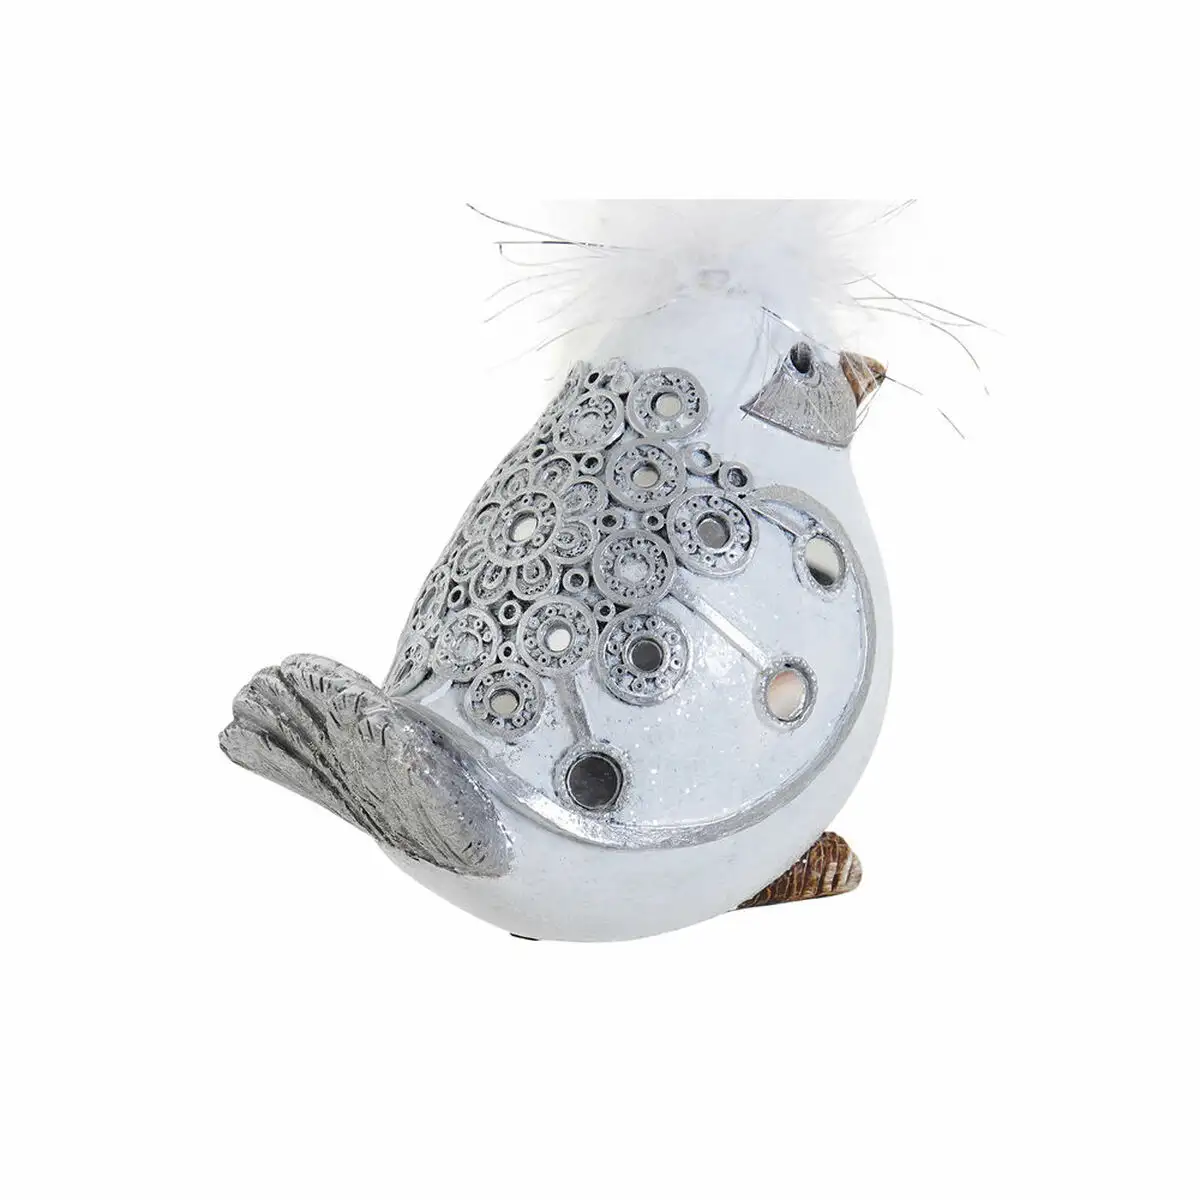 Figurine decorative dkd home decor blanc argente resine oiseau romantique 15 x 9 x 12 cm_4561. Bienvenue sur DIAYTAR SENEGAL - Votre Galerie Shopping Personnalisée. Découvrez un monde de produits diversifiés qui expriment votre style unique et votre passion pour la qualité.